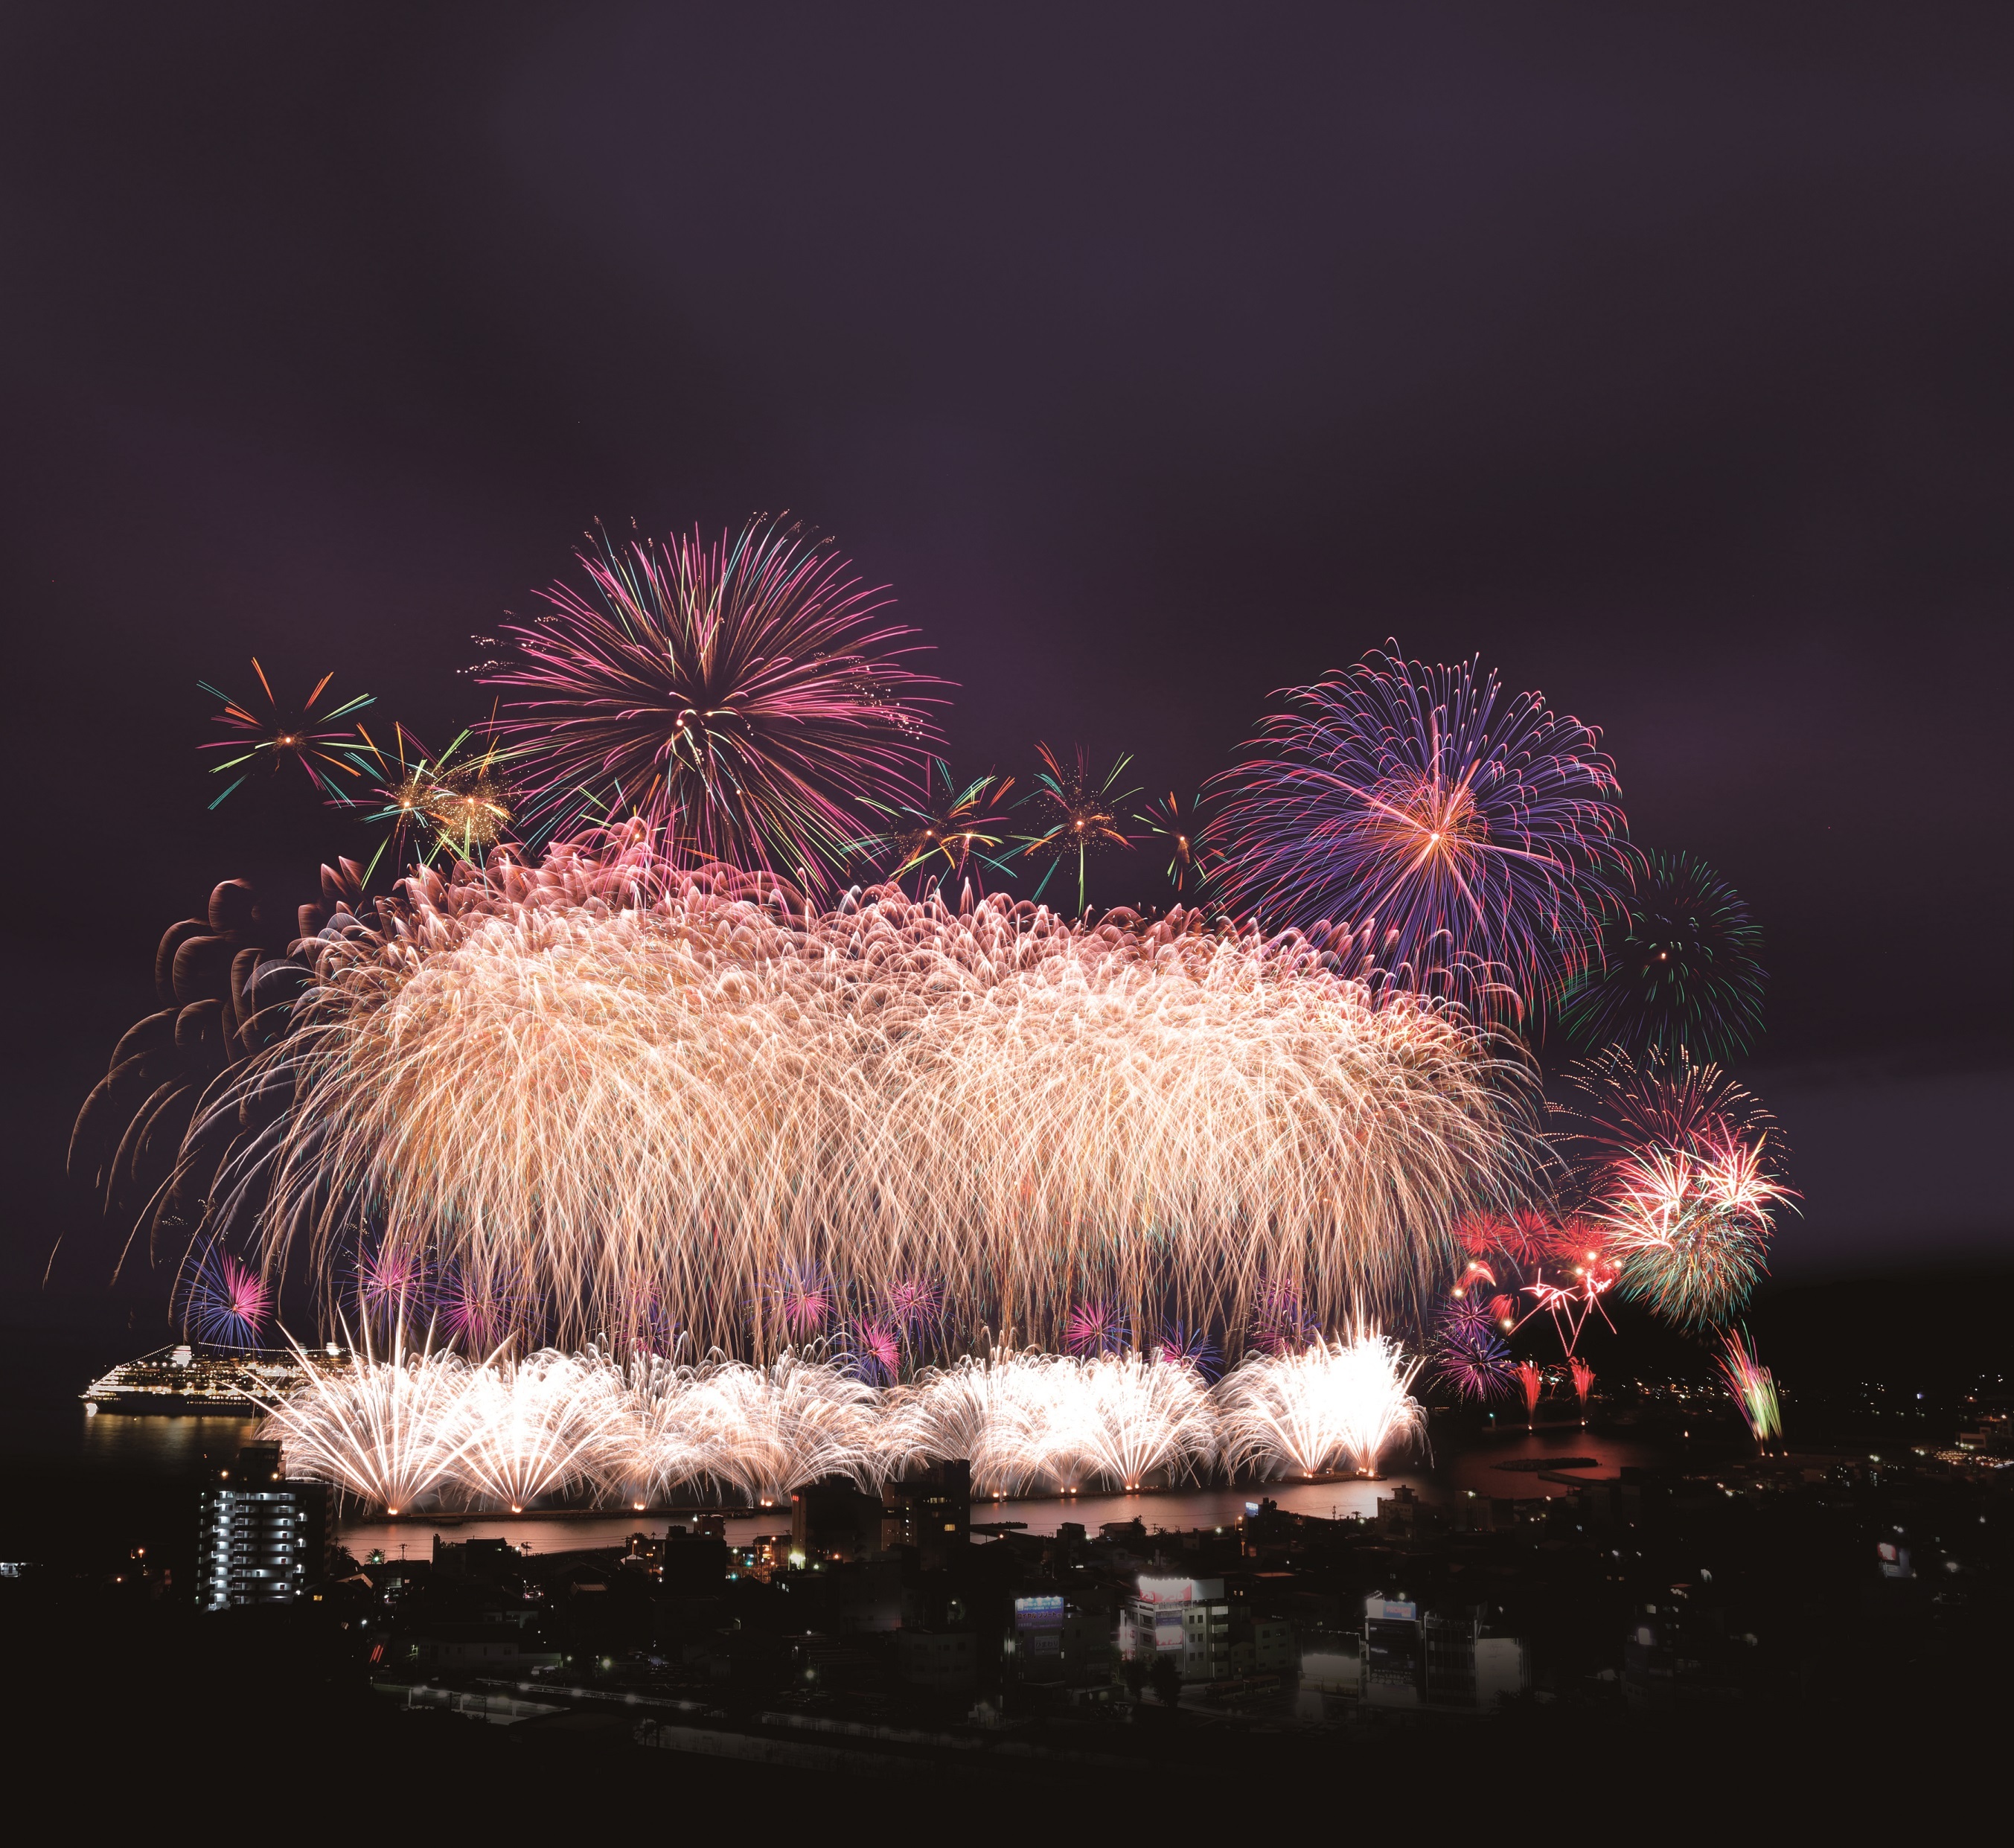 伊東温泉海の花火大会、令和6年は伊豆最多の15回開催！
7月26日から8月24日の実施期間のスケジュールを公開